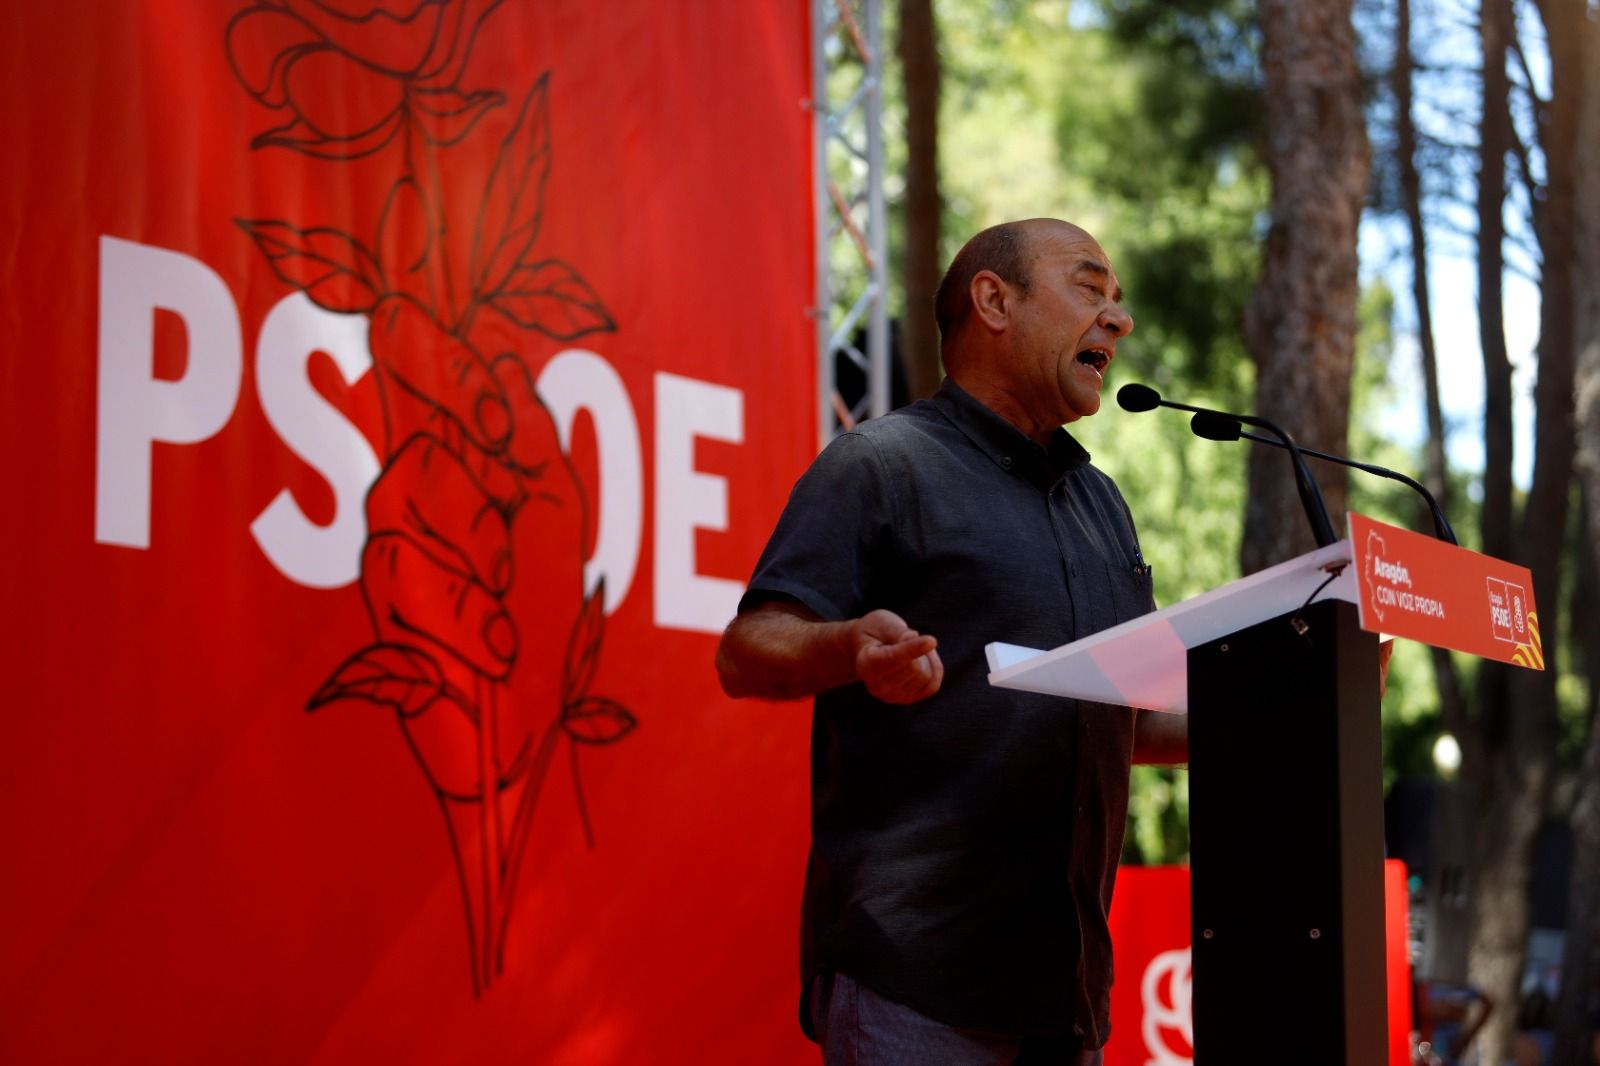 Las mejores imágenes de la Fiesta de la Rosa del PSOE en el Parque de Atracciones de Zaragoza